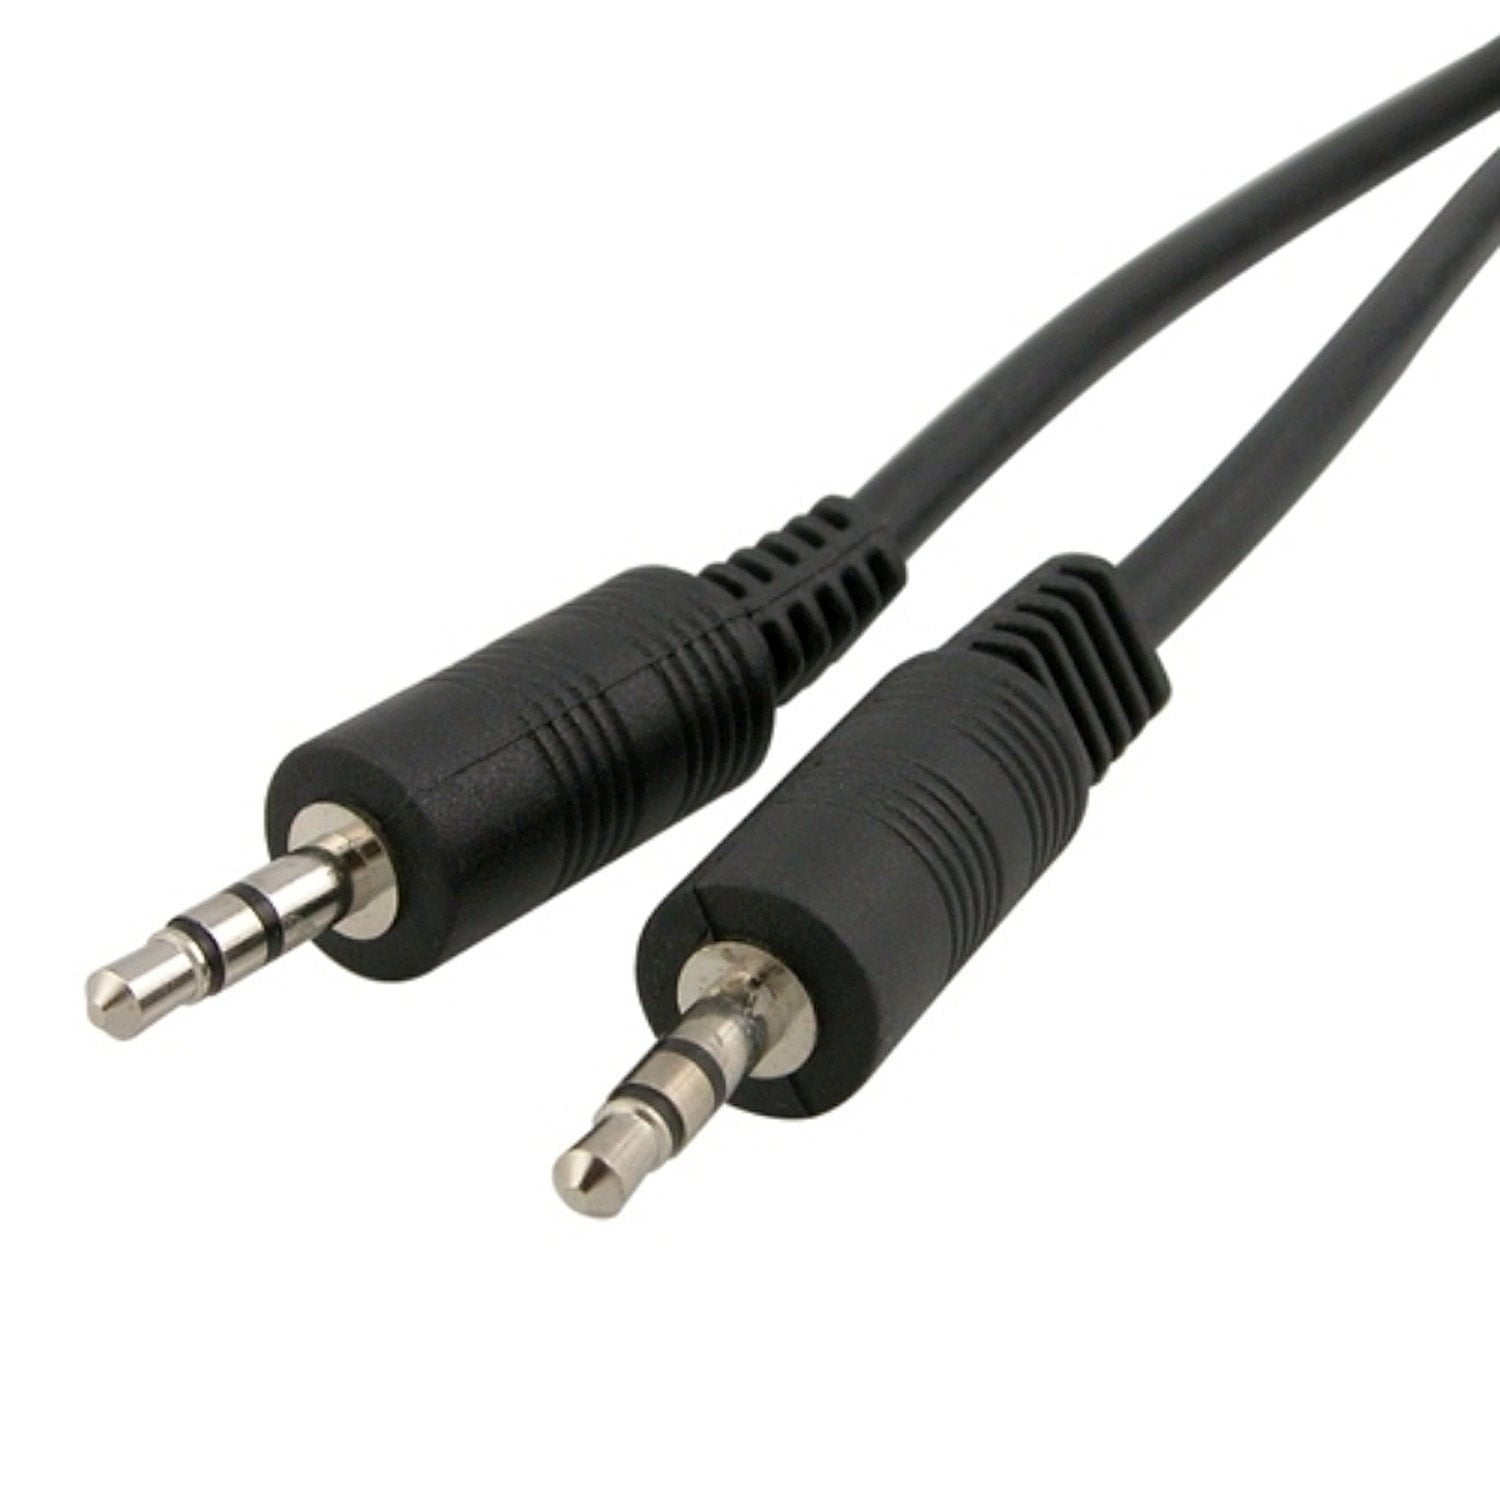 Câble de connexion audio stéréo mini jack 3,5 mm mâle vers 3,5 mm mâle de  1,5 m de long